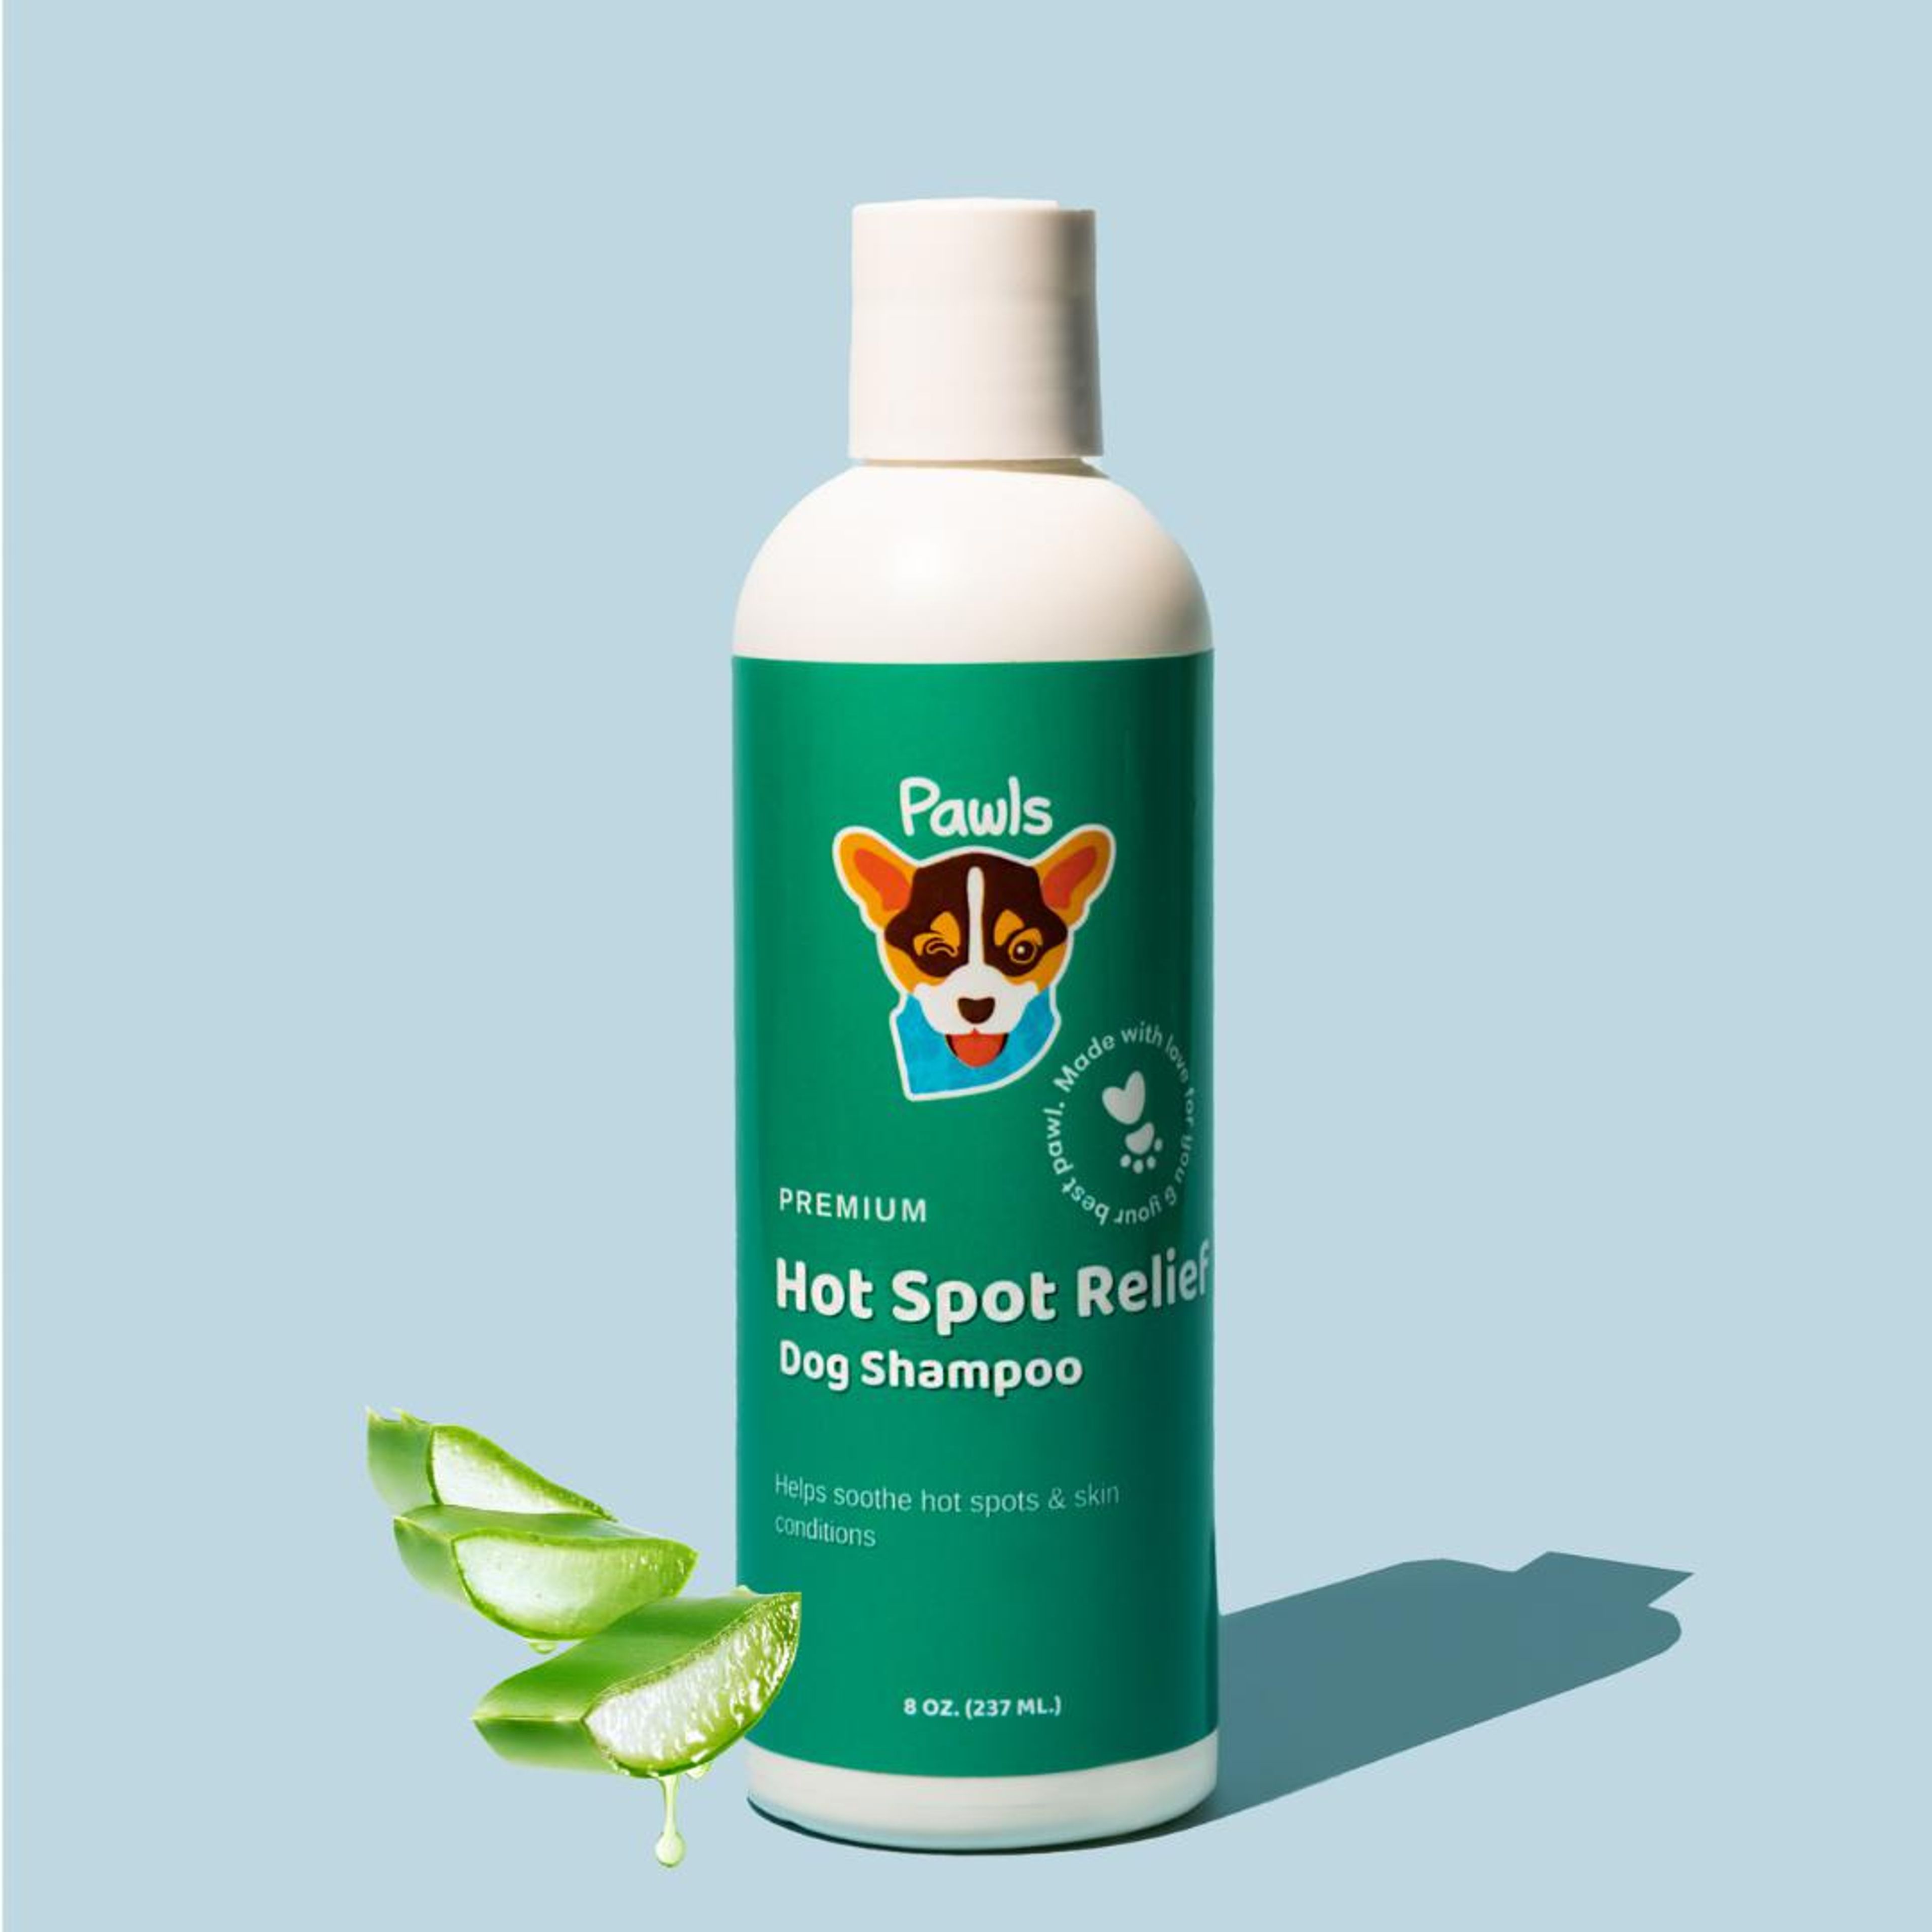 Hot Spot Relief Dog Shampoo